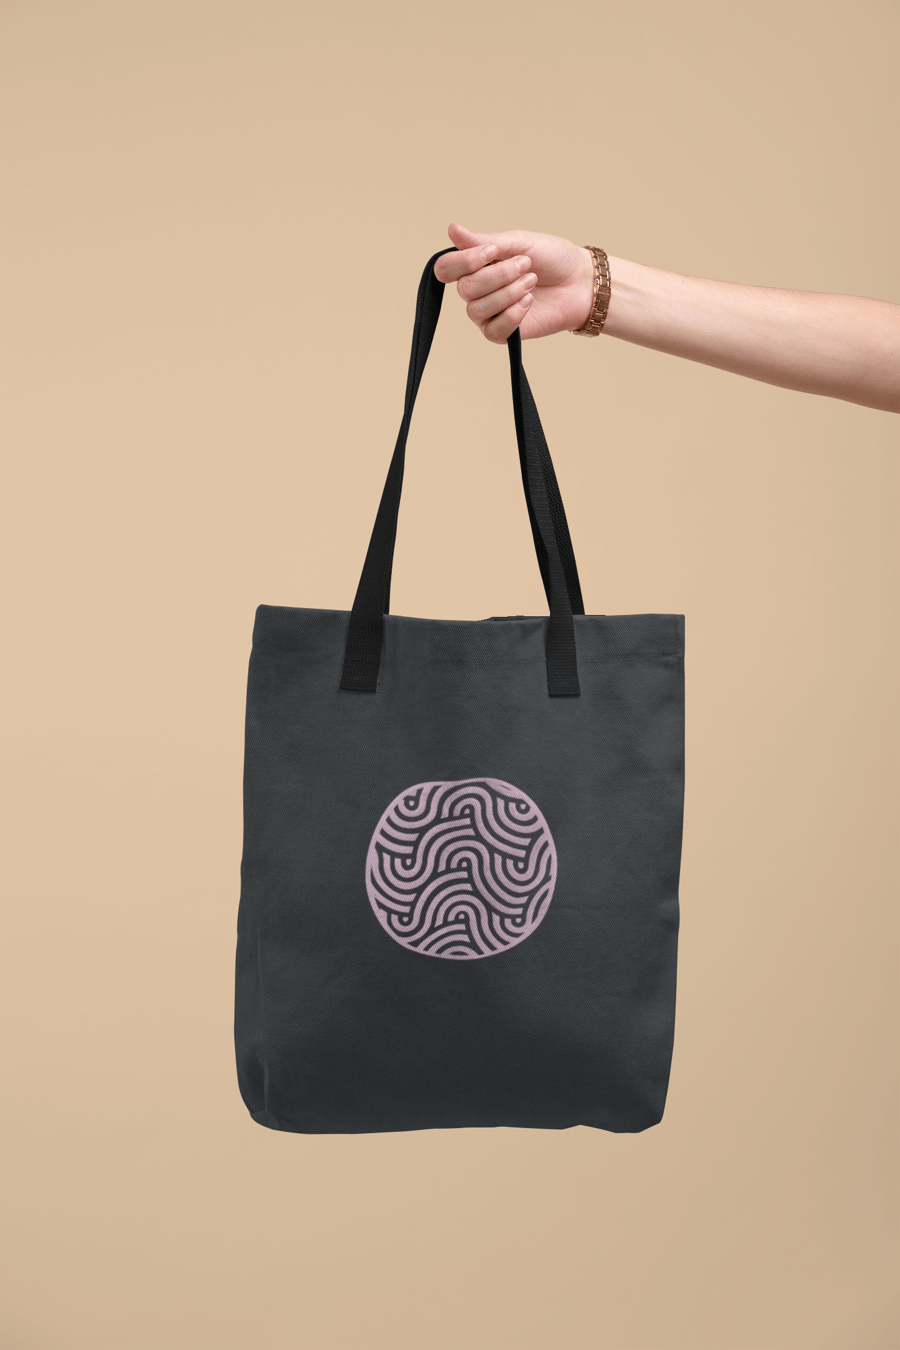 Abstract Circular Wave Tote Bag 